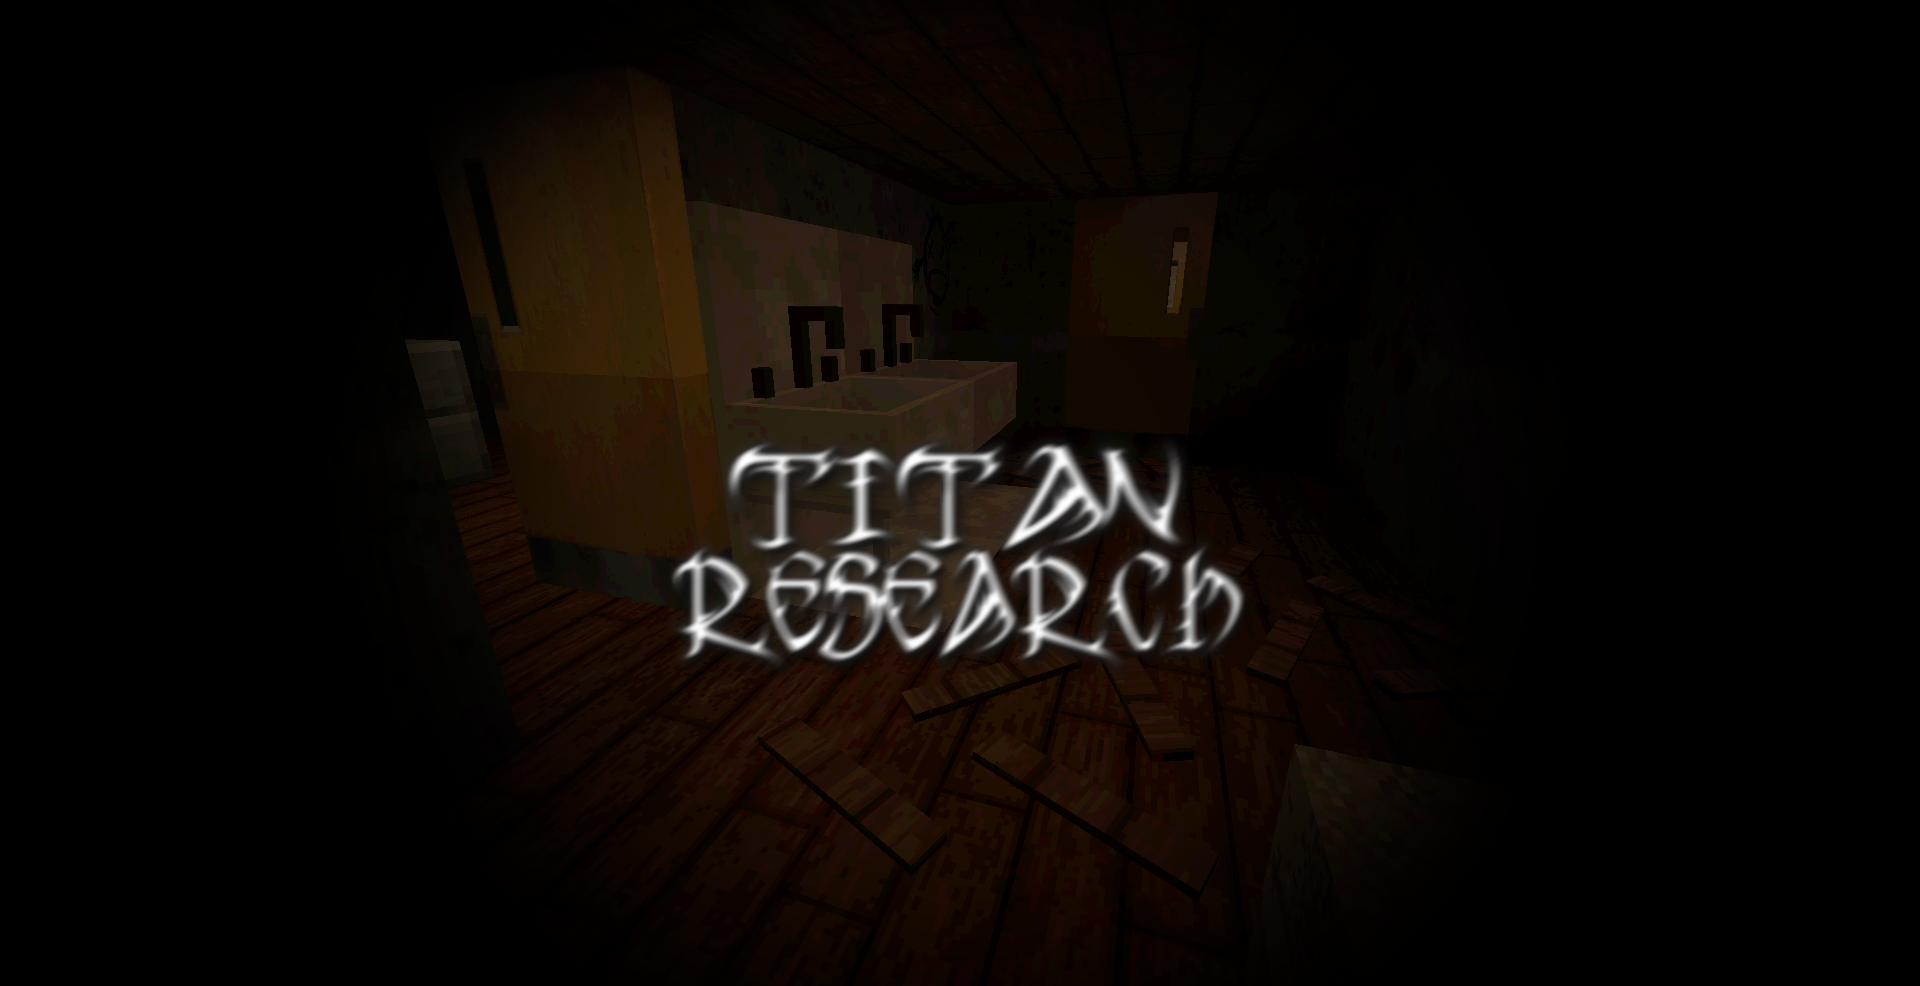 İndir Titan Research için Minecraft 1.14.4